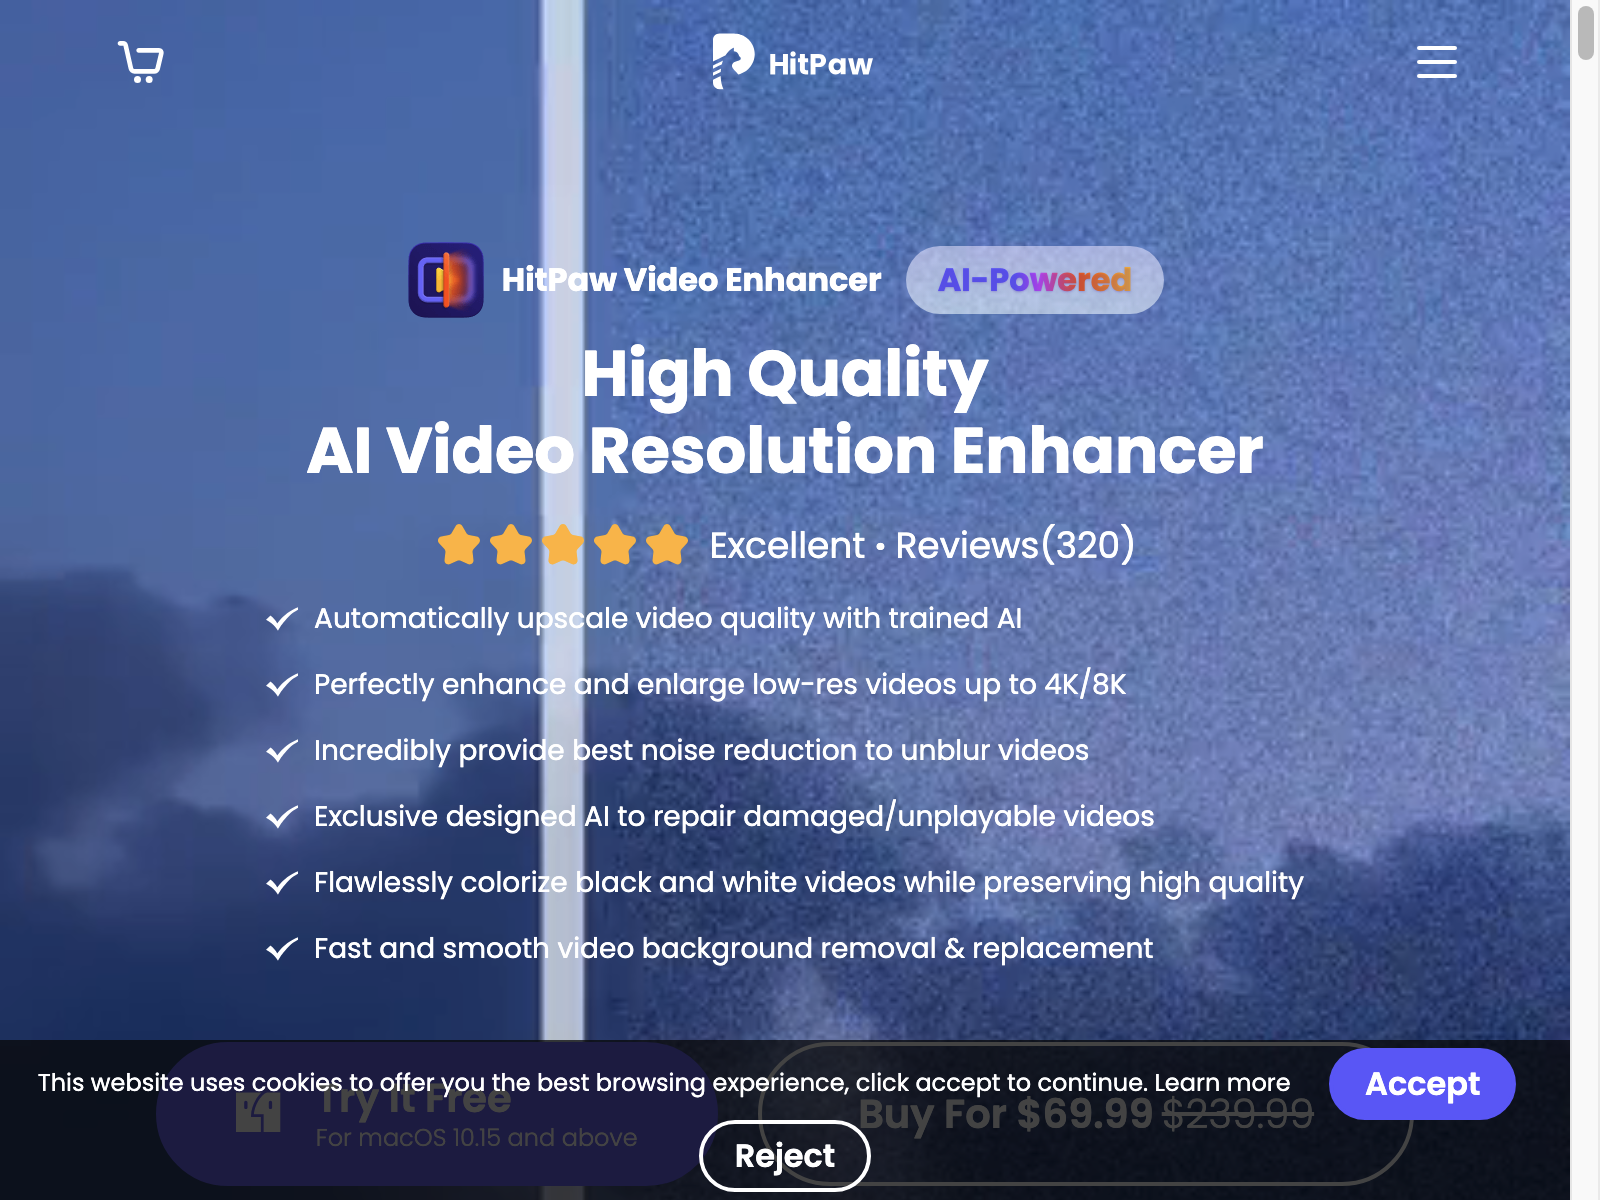 hitpaw video enhancer Review: Pros, Cons, Alternatives